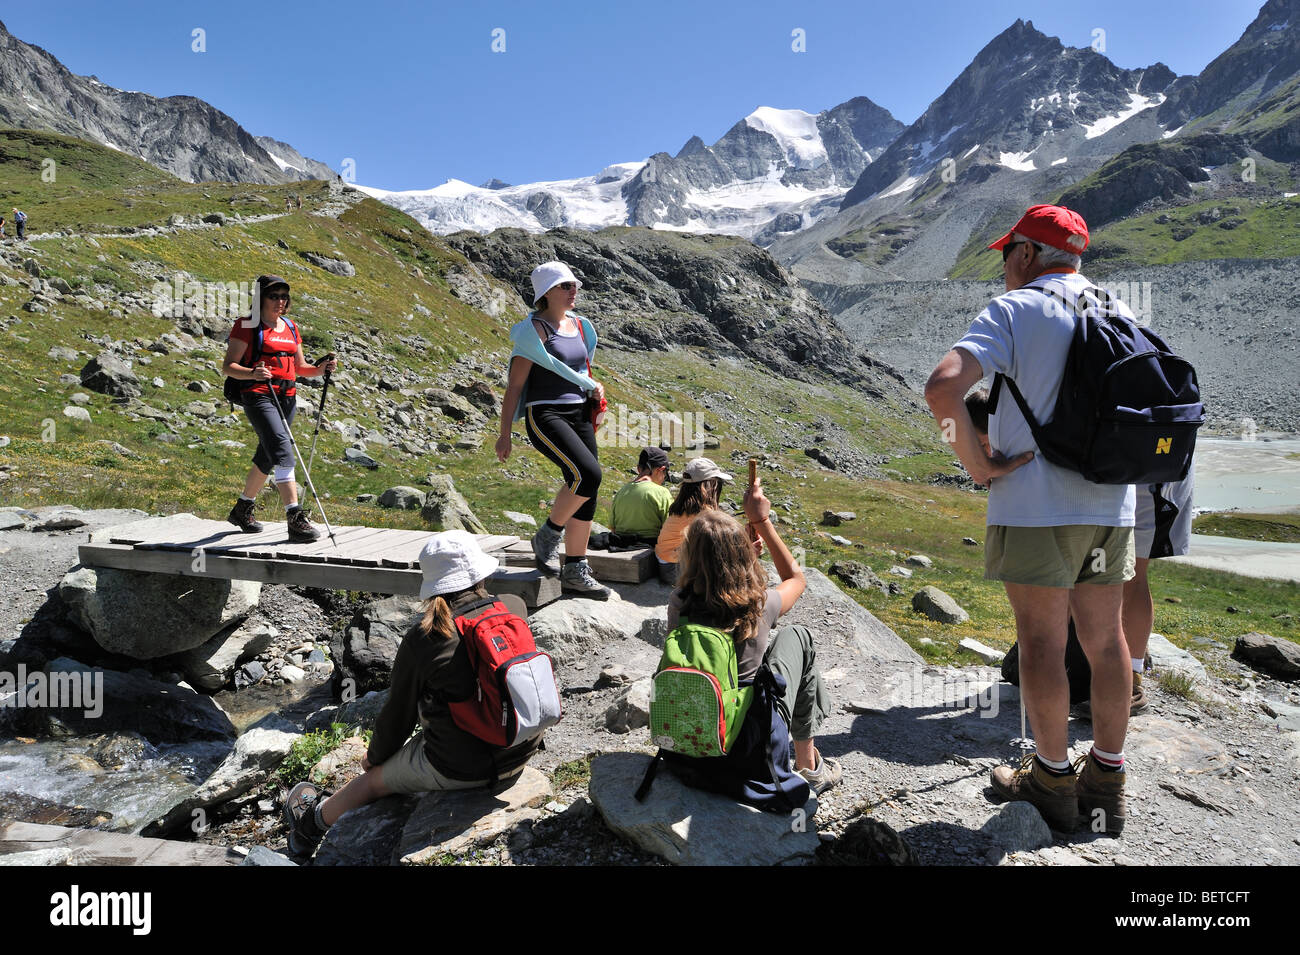 Les touristes / marcheurs marcher le long du chemin de montagne dans les Alpes Valaisannes Suisse / Walliser Alpen, Valais / Wallis (Suisse) Banque D'Images